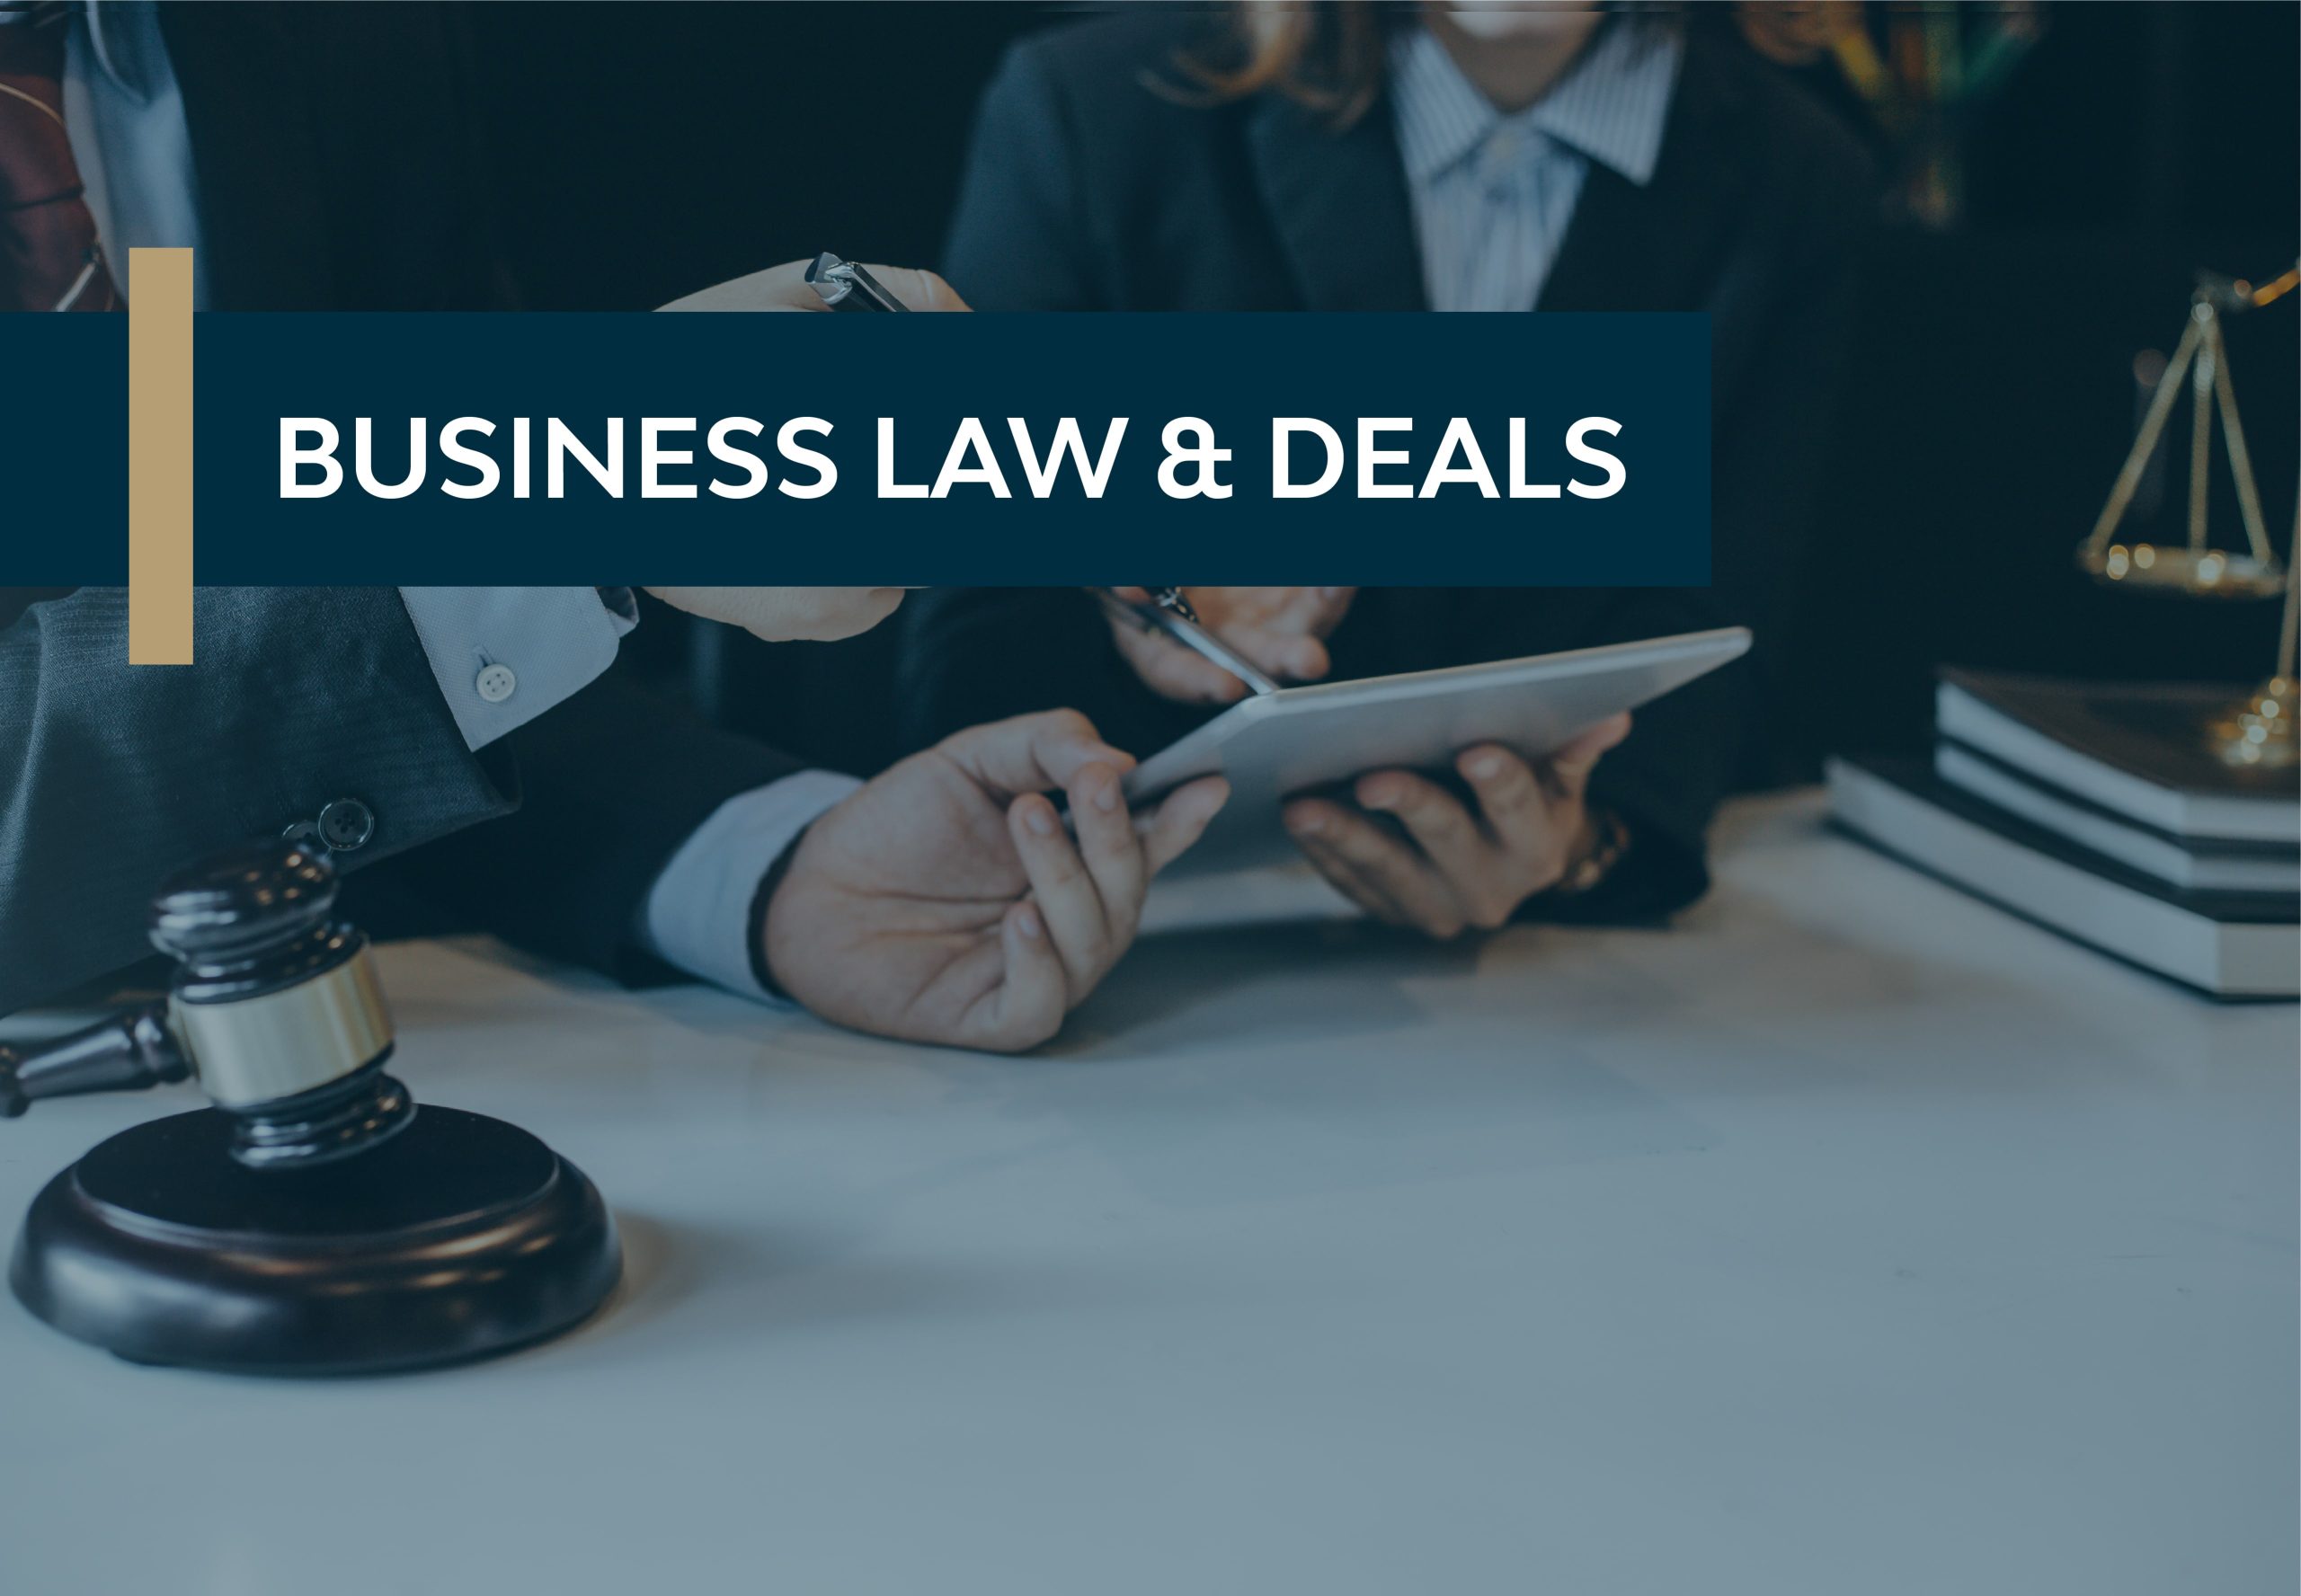 Business Law & Deals